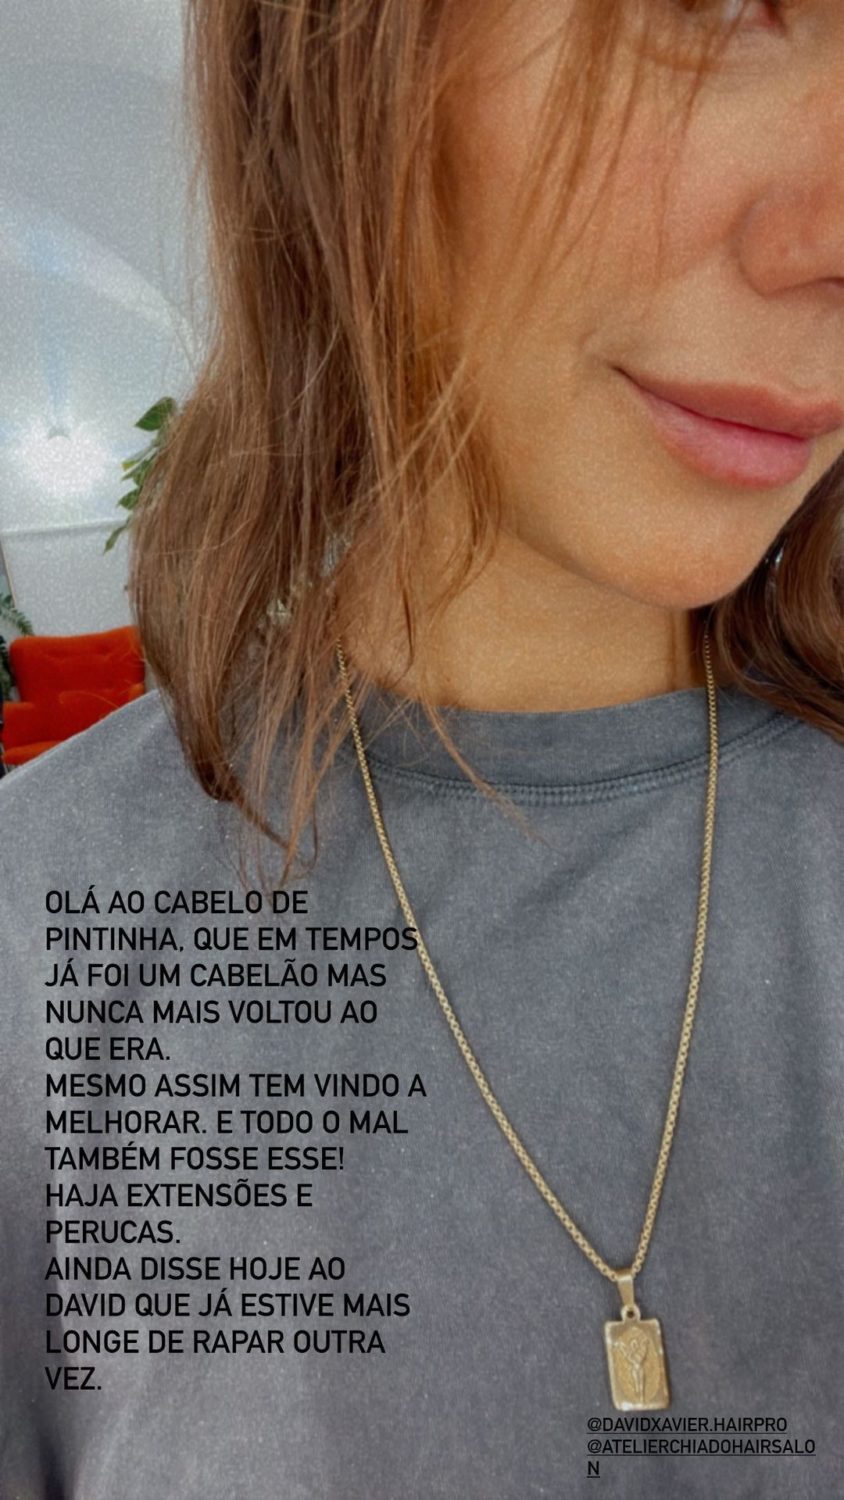 Sofia Ribeiro refresca visual e atira: &#8220;Já estive mais longe de rapar o cabelo outra vez&#8221;